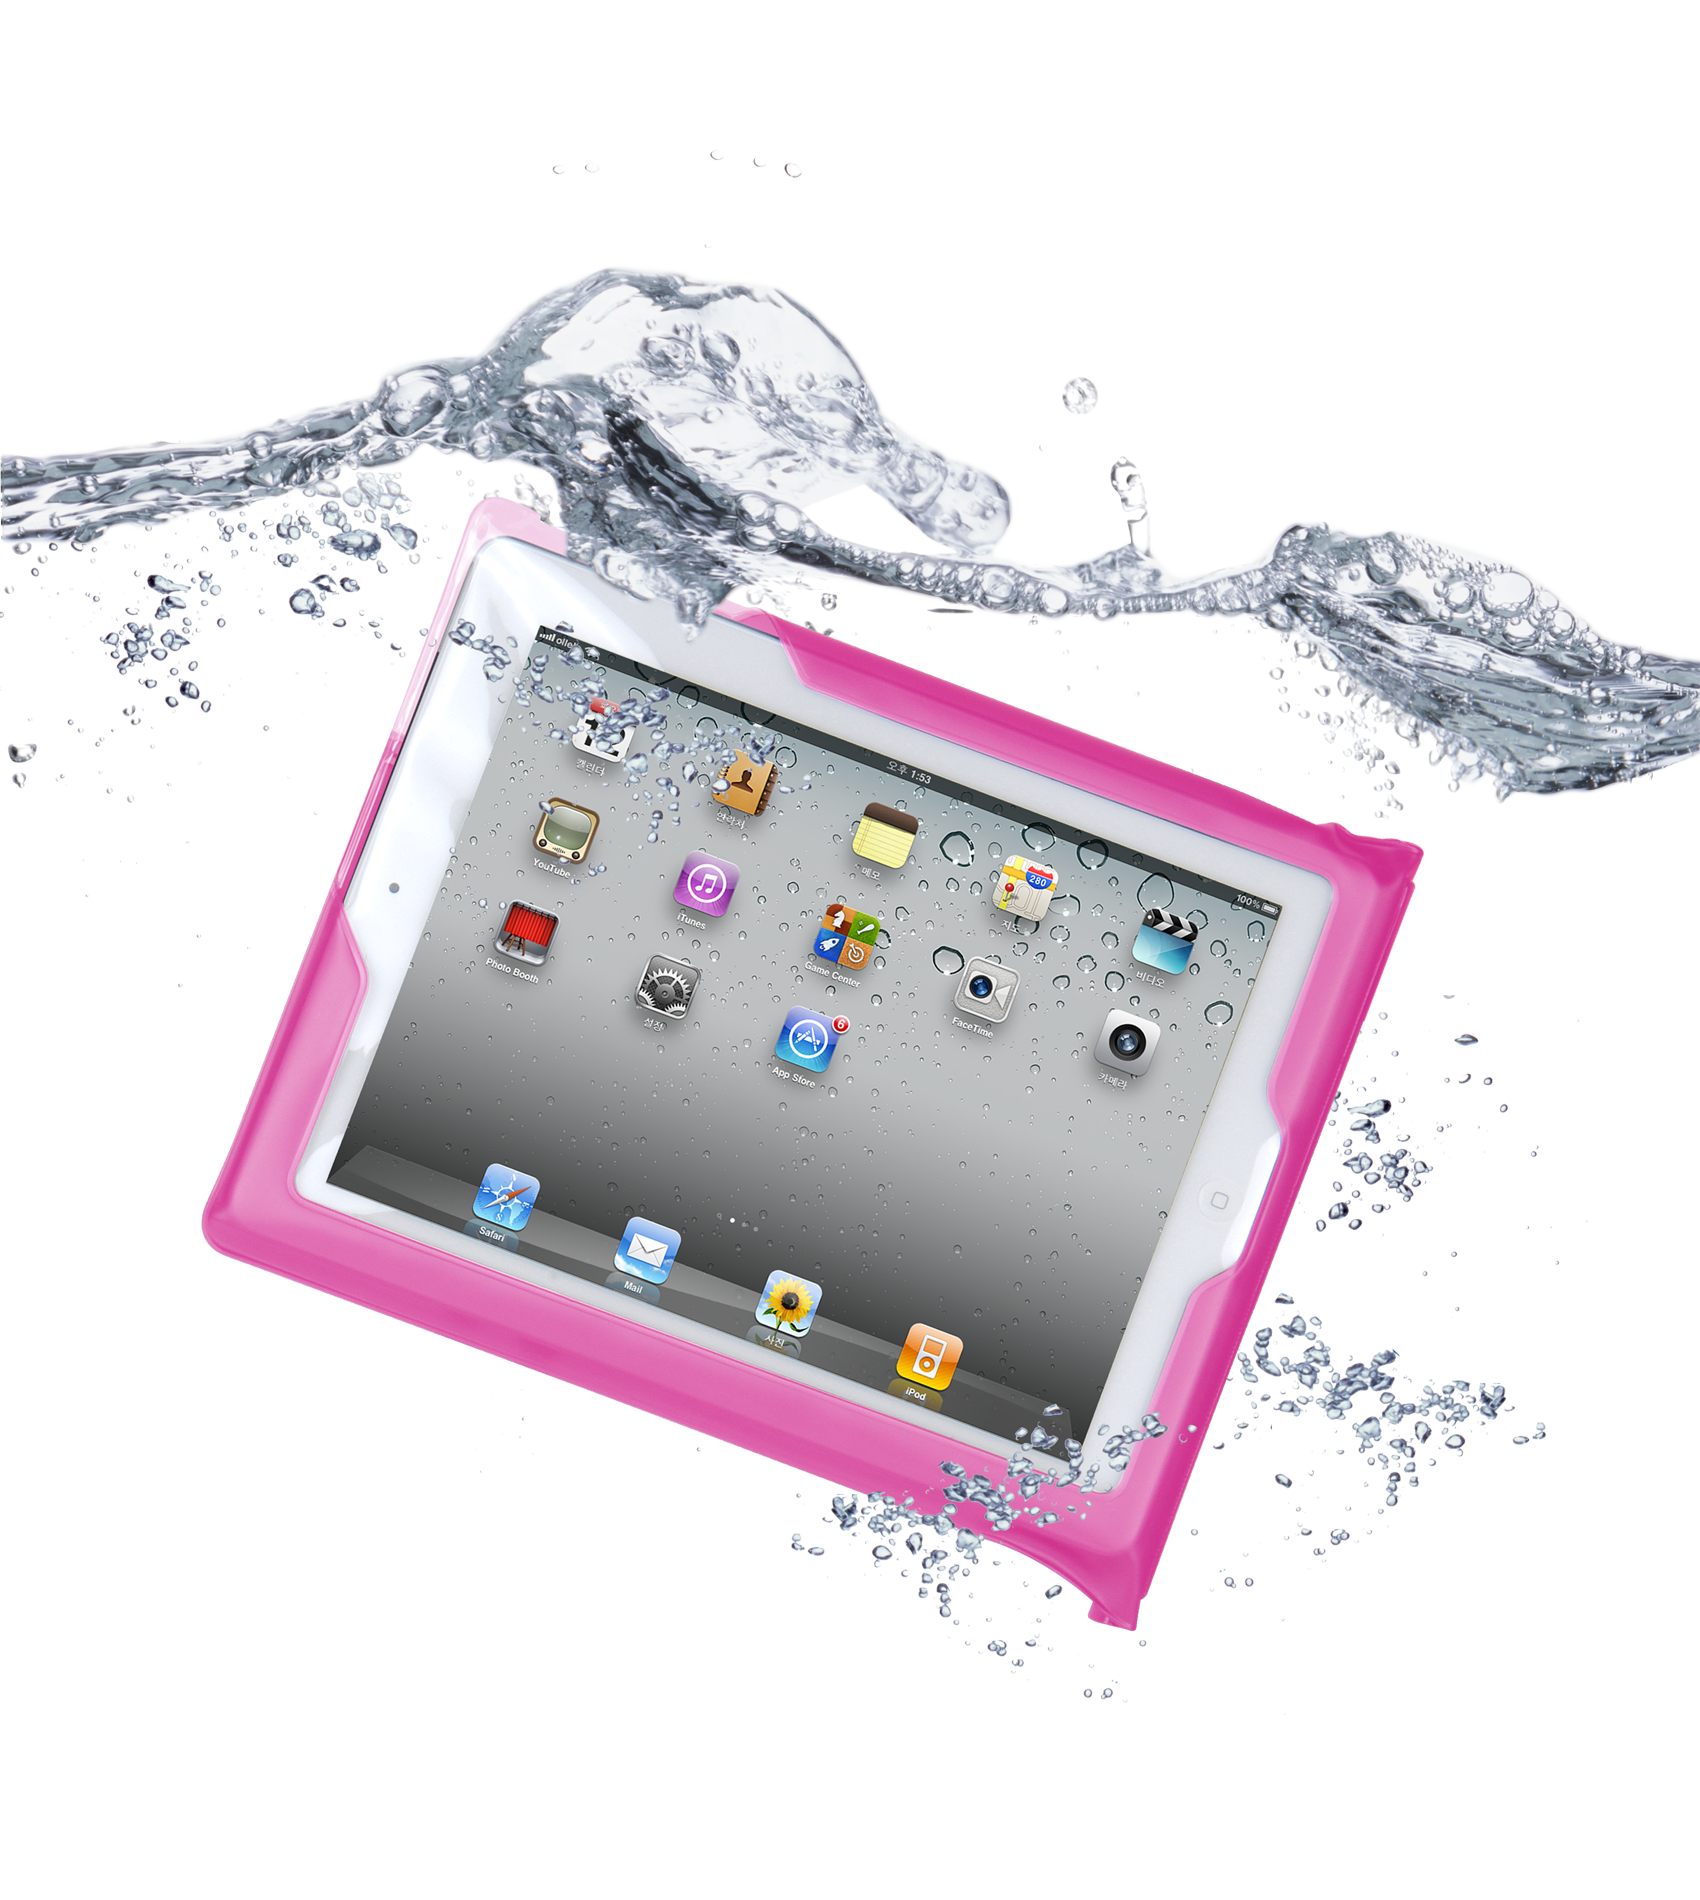 DiCAPac Tablet Tasche wasserdicht für iPad™ pink